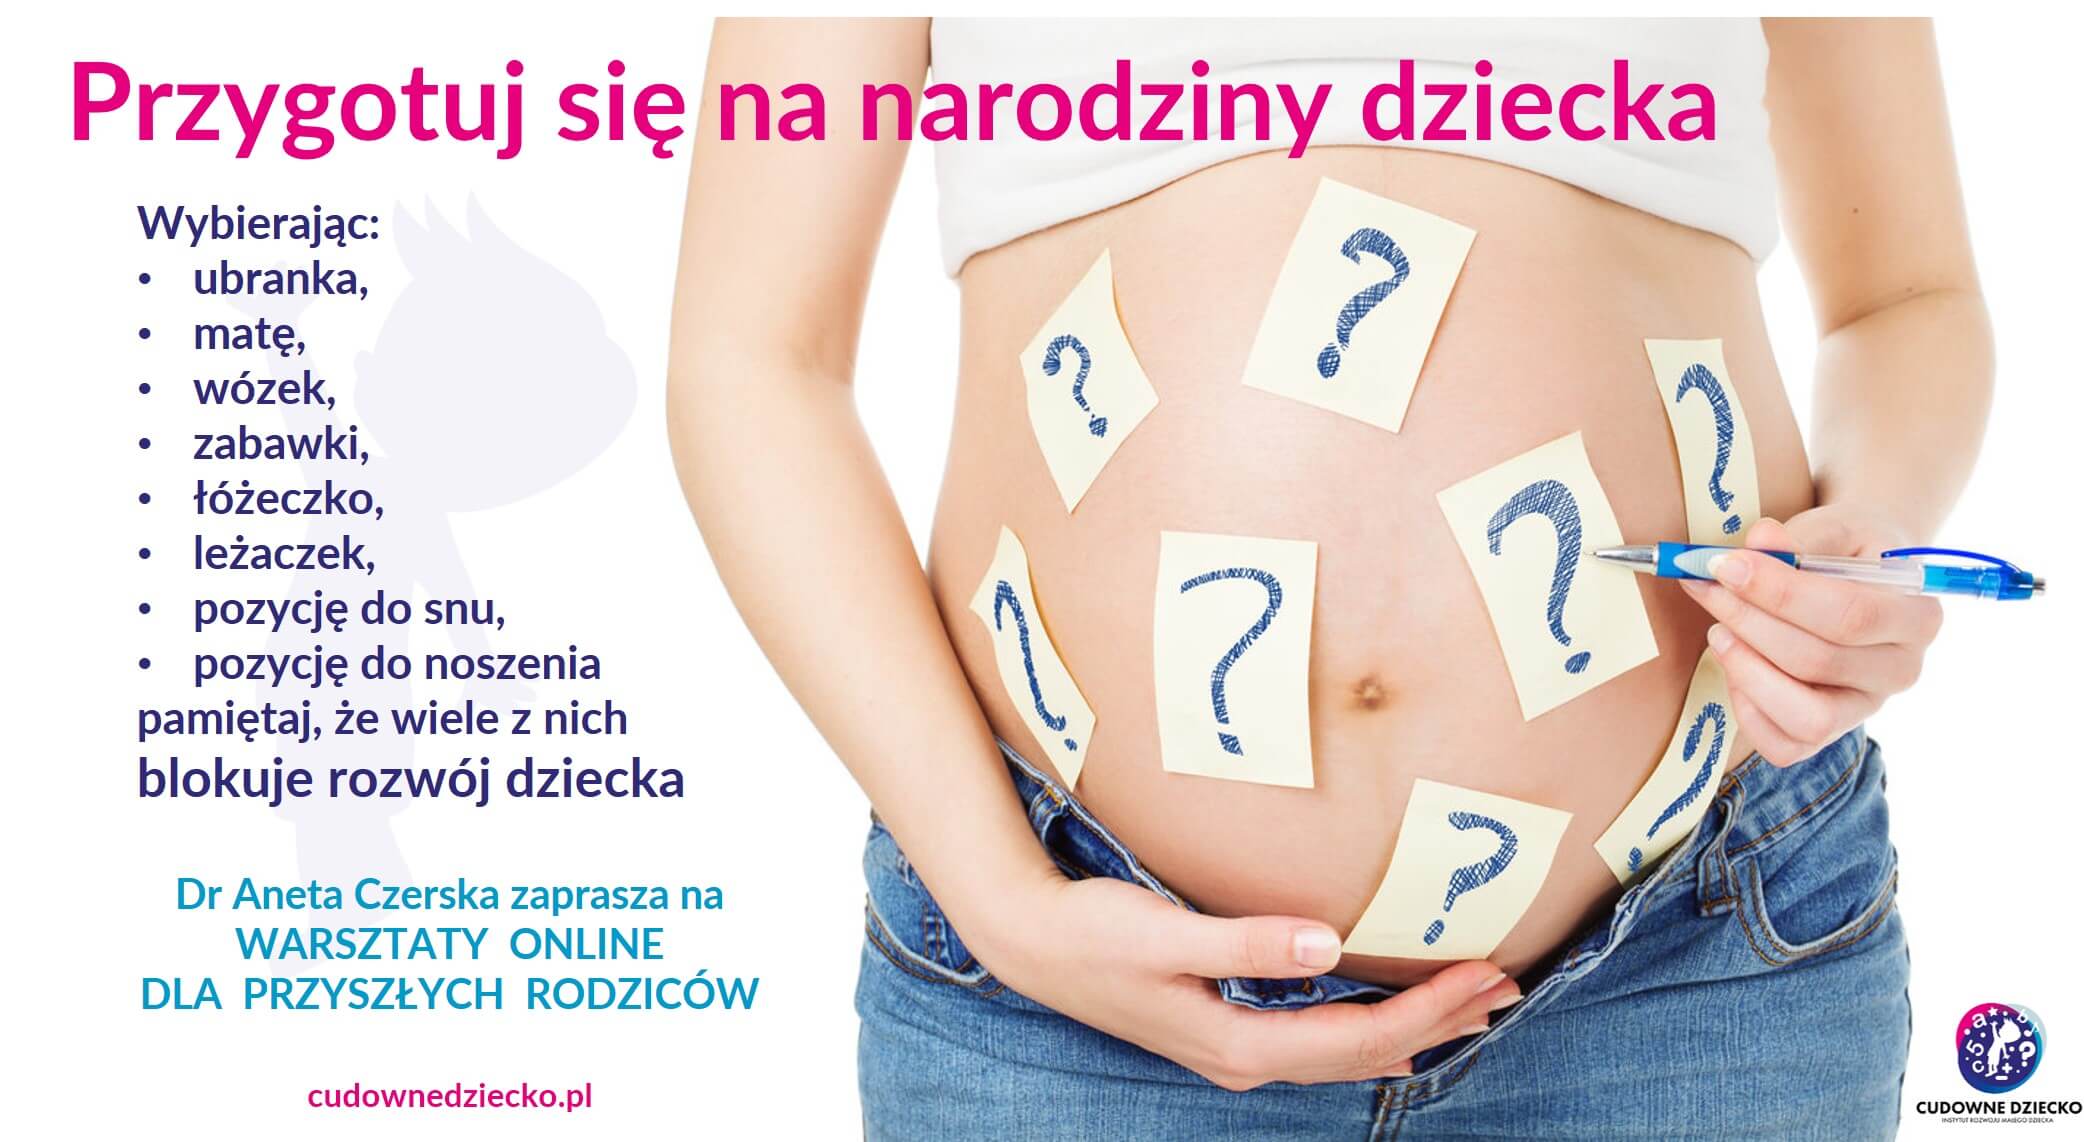 Warsztaty Online Dla Ciężarnych Kobiet W Ciąży 2020-2021 Plakat Zaproszenie